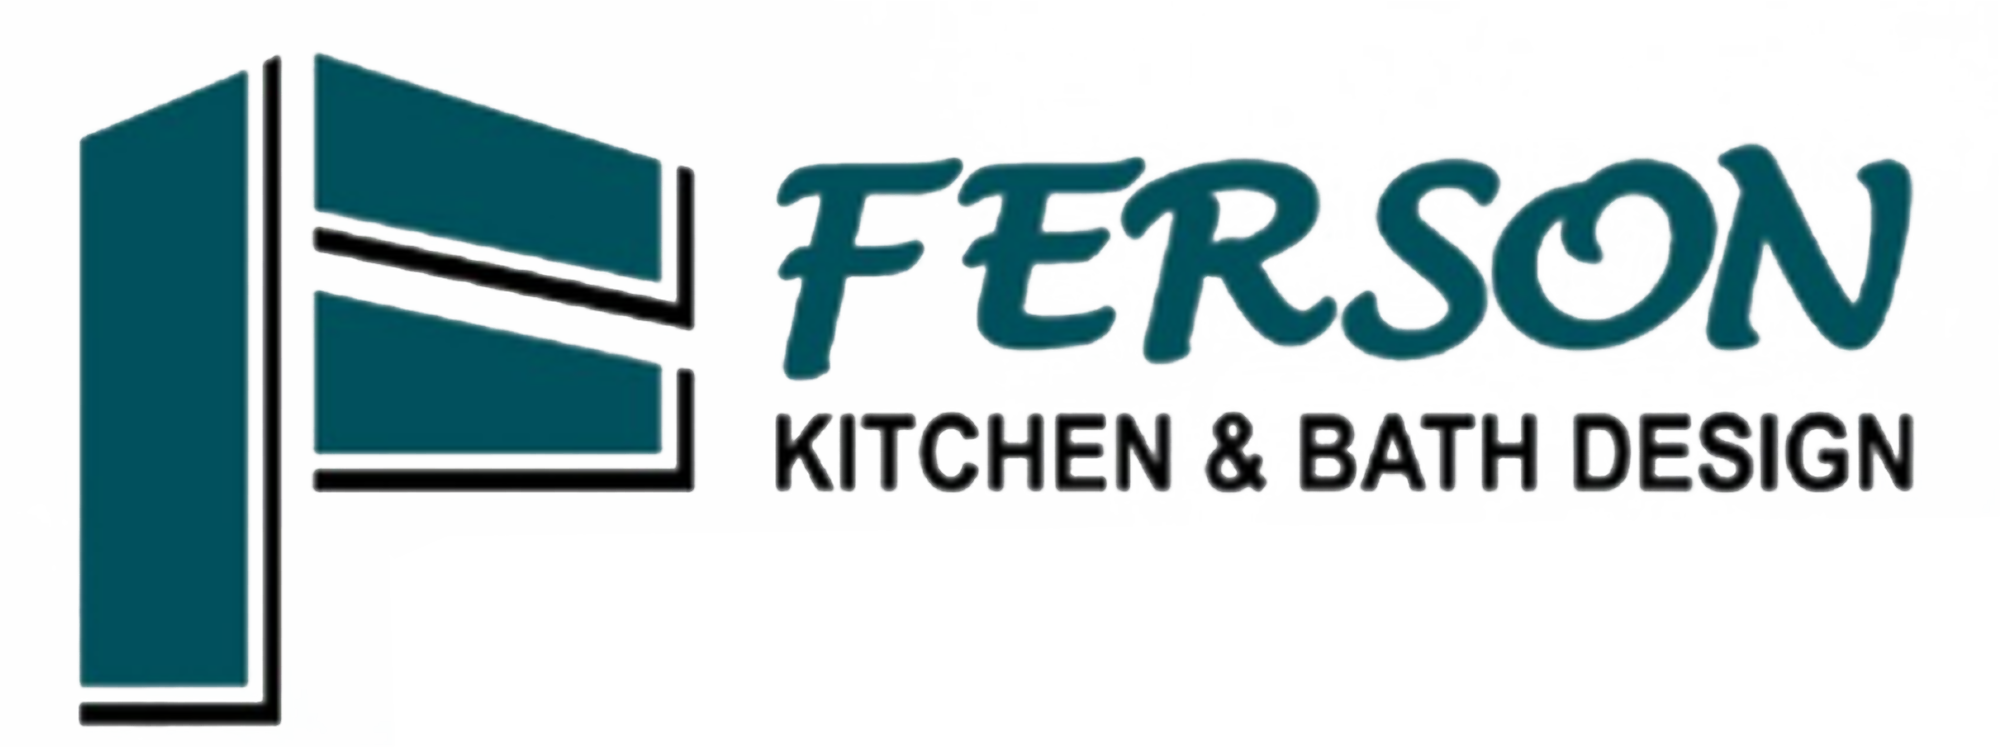 Ferson Kitchen & Bath Design